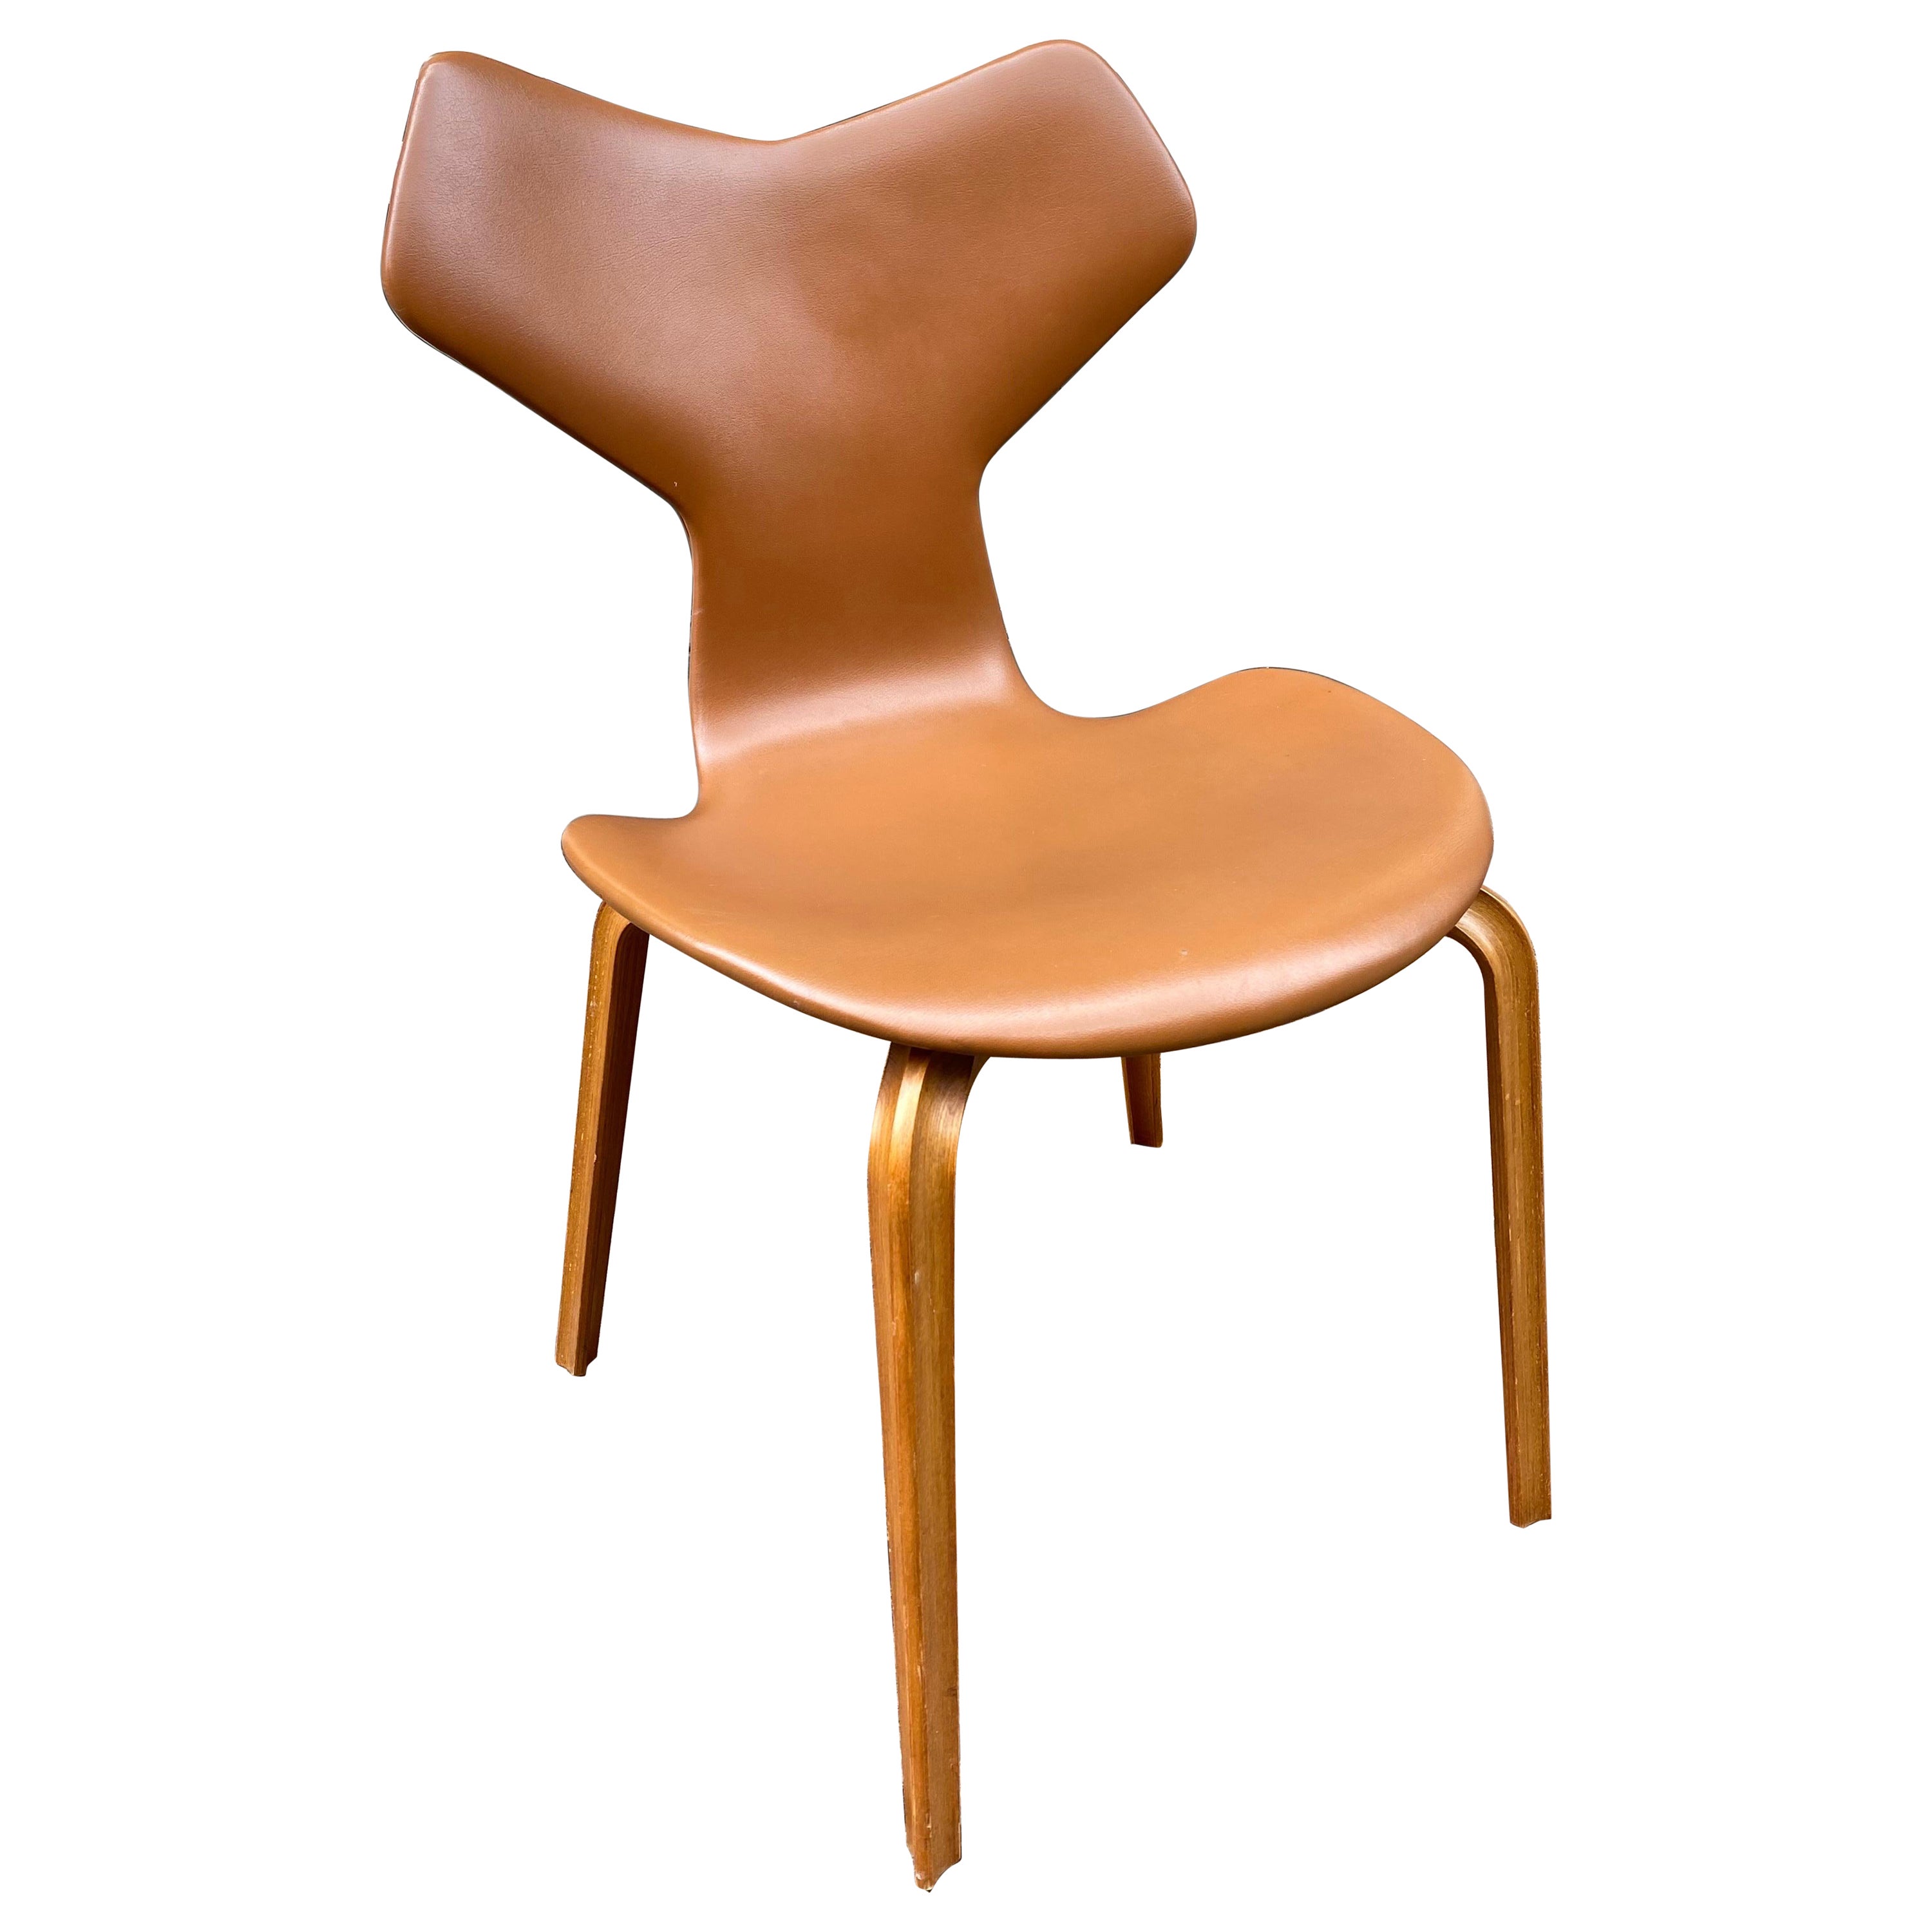 Grand Prix-Stuhl von Arne Jacobsen 4130